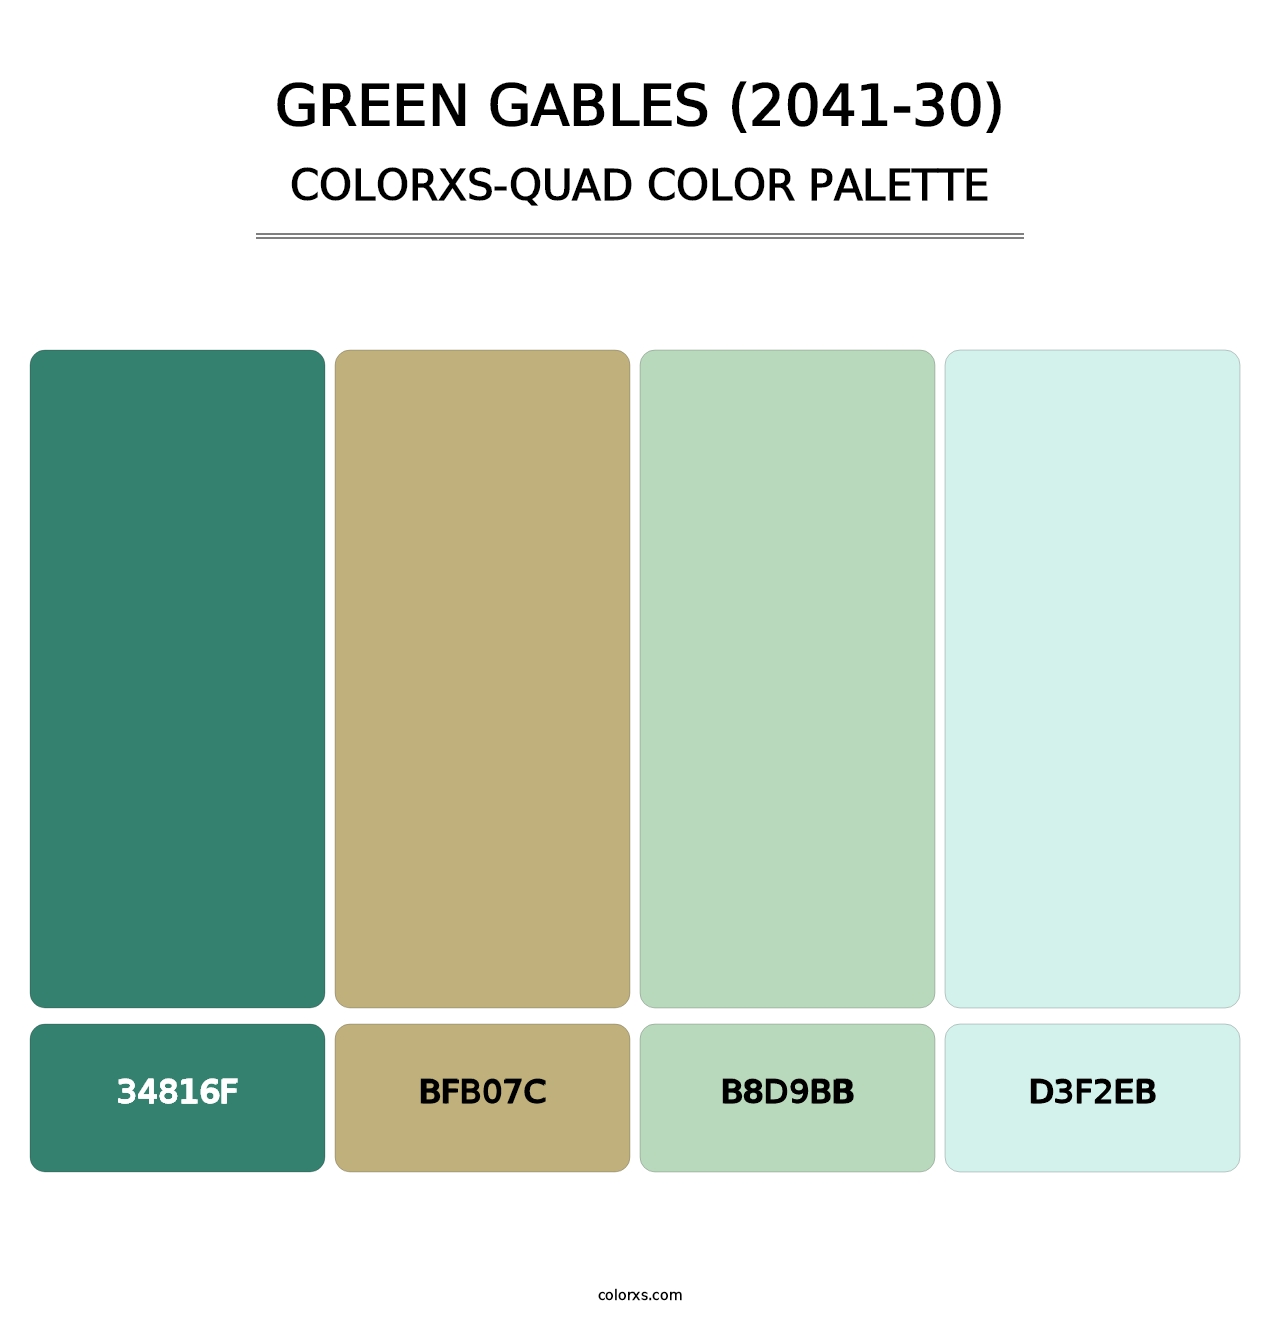 Green Gables (2041-30) - Colorxs Quad Palette